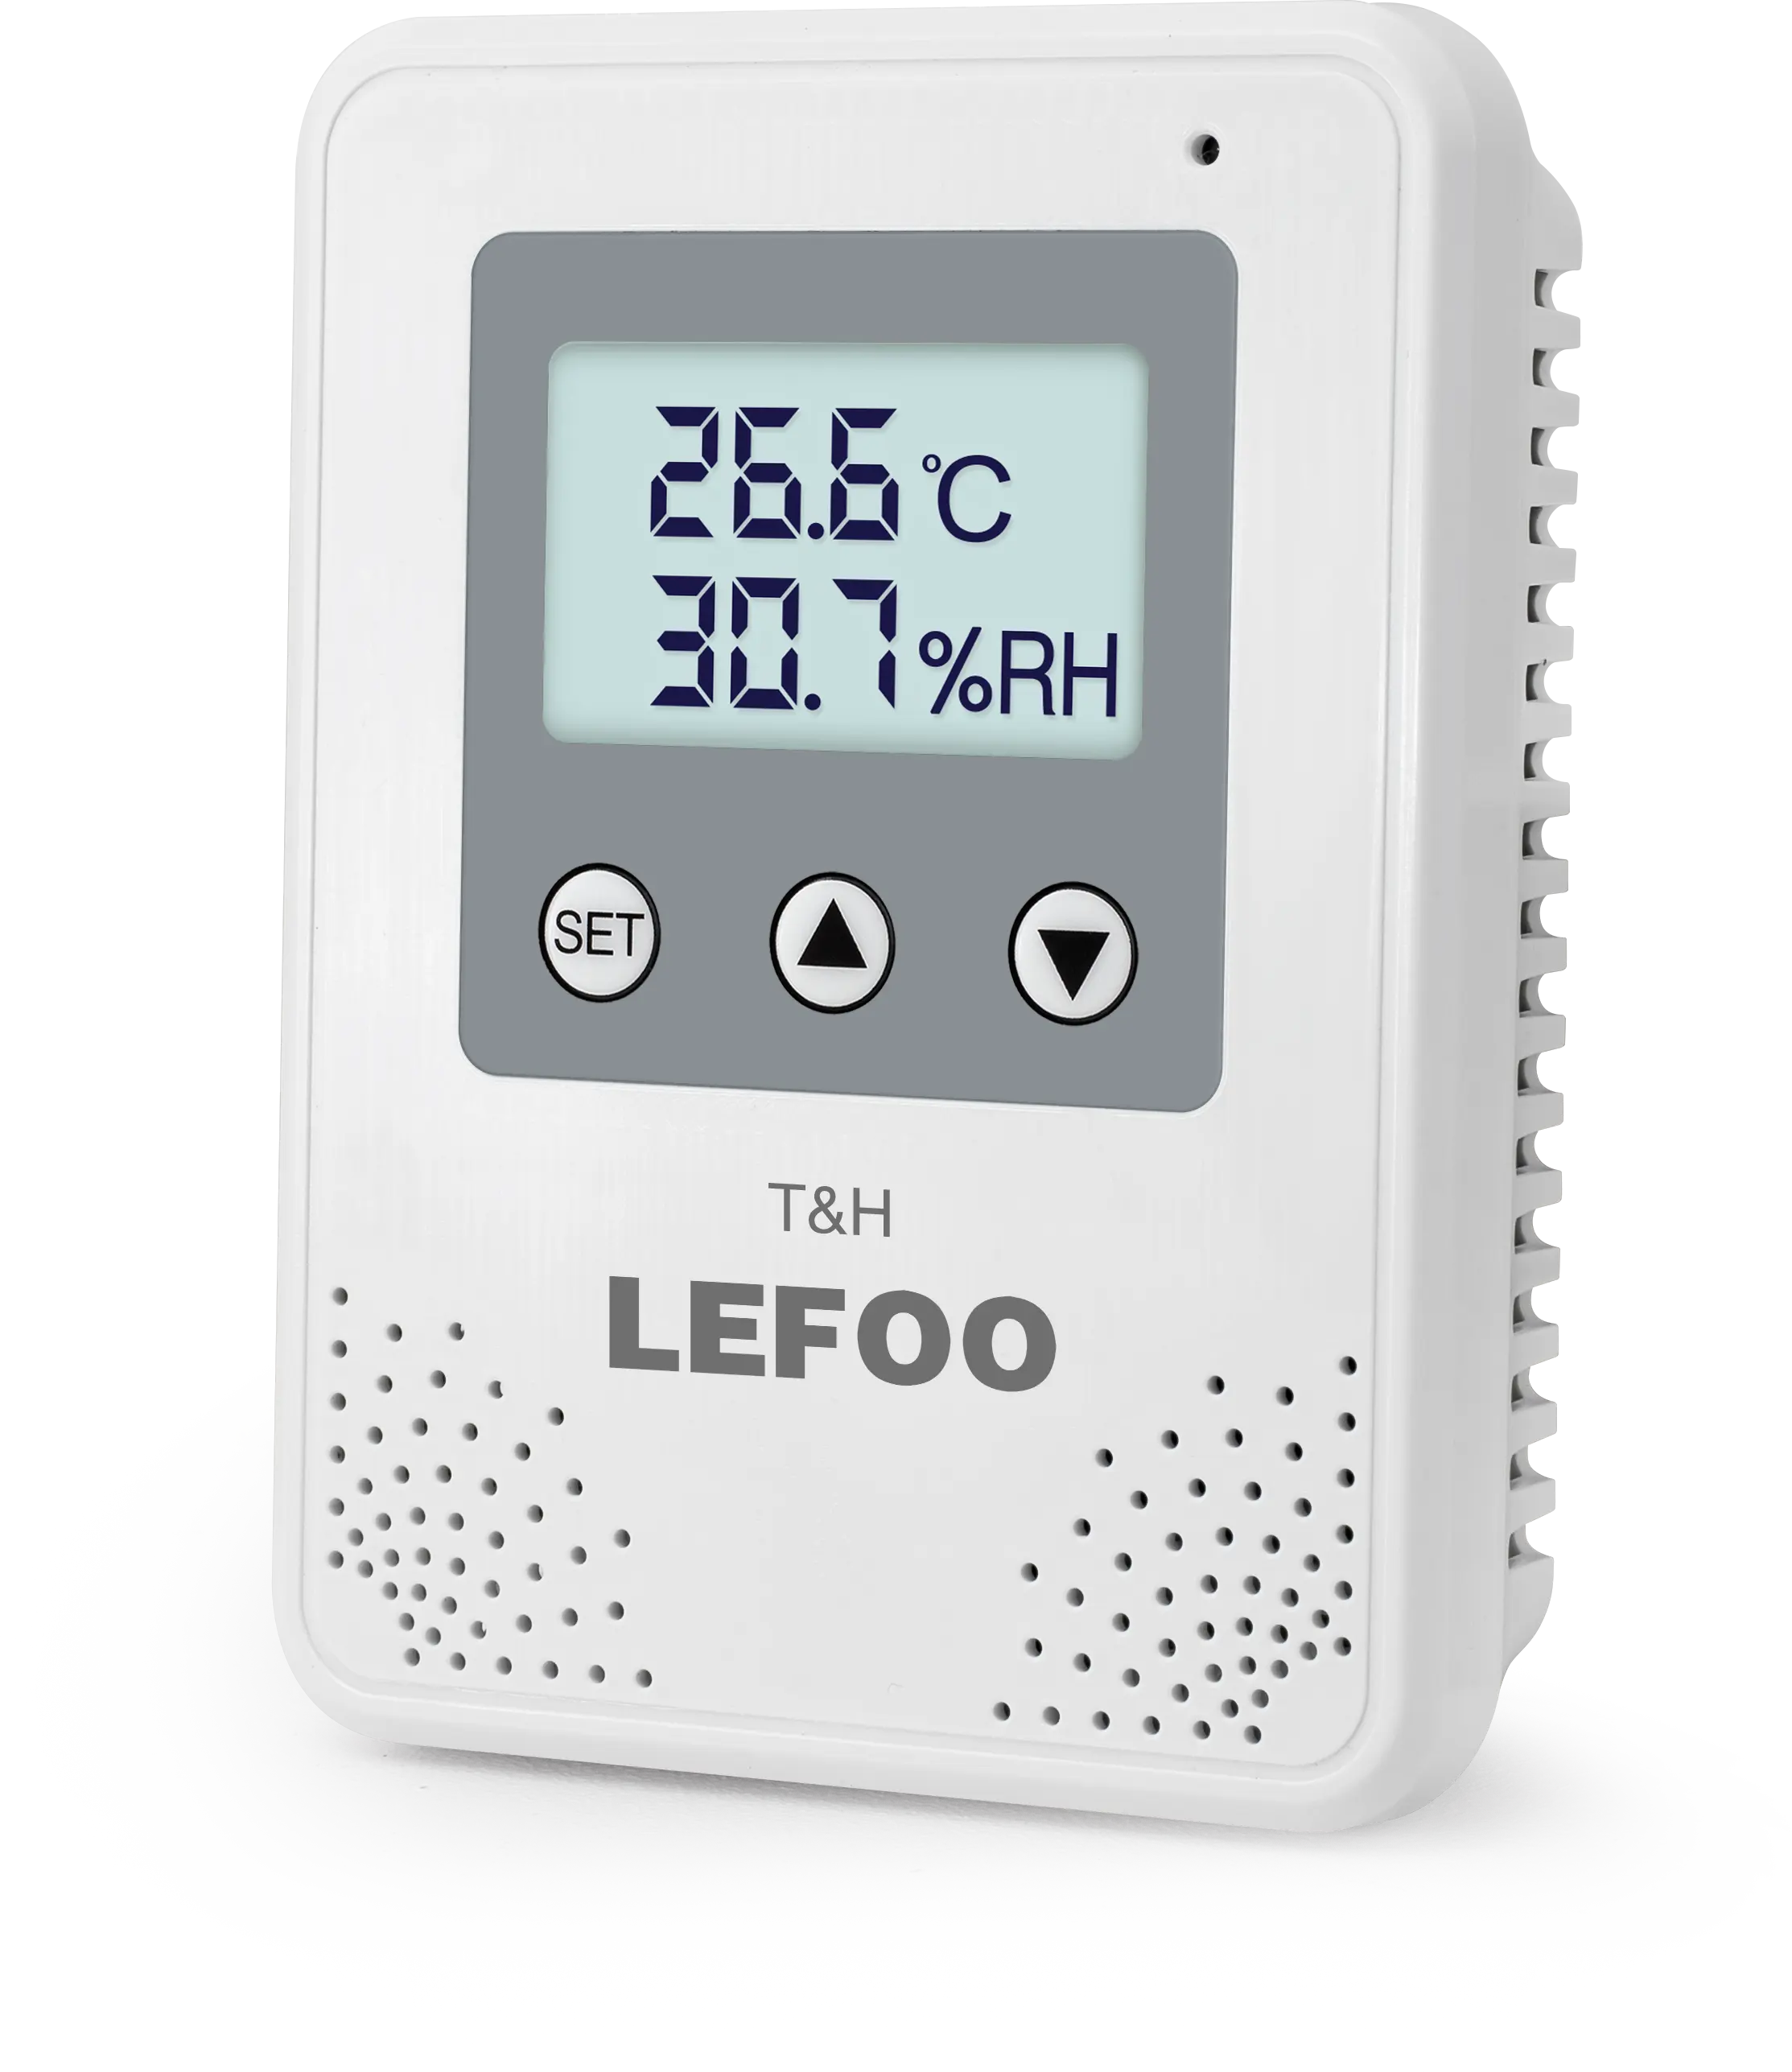 LEFOO CE ROHS certificado pantalla LCD controlador de temperatura y humedad sensor transmisor con función de relé y alarma